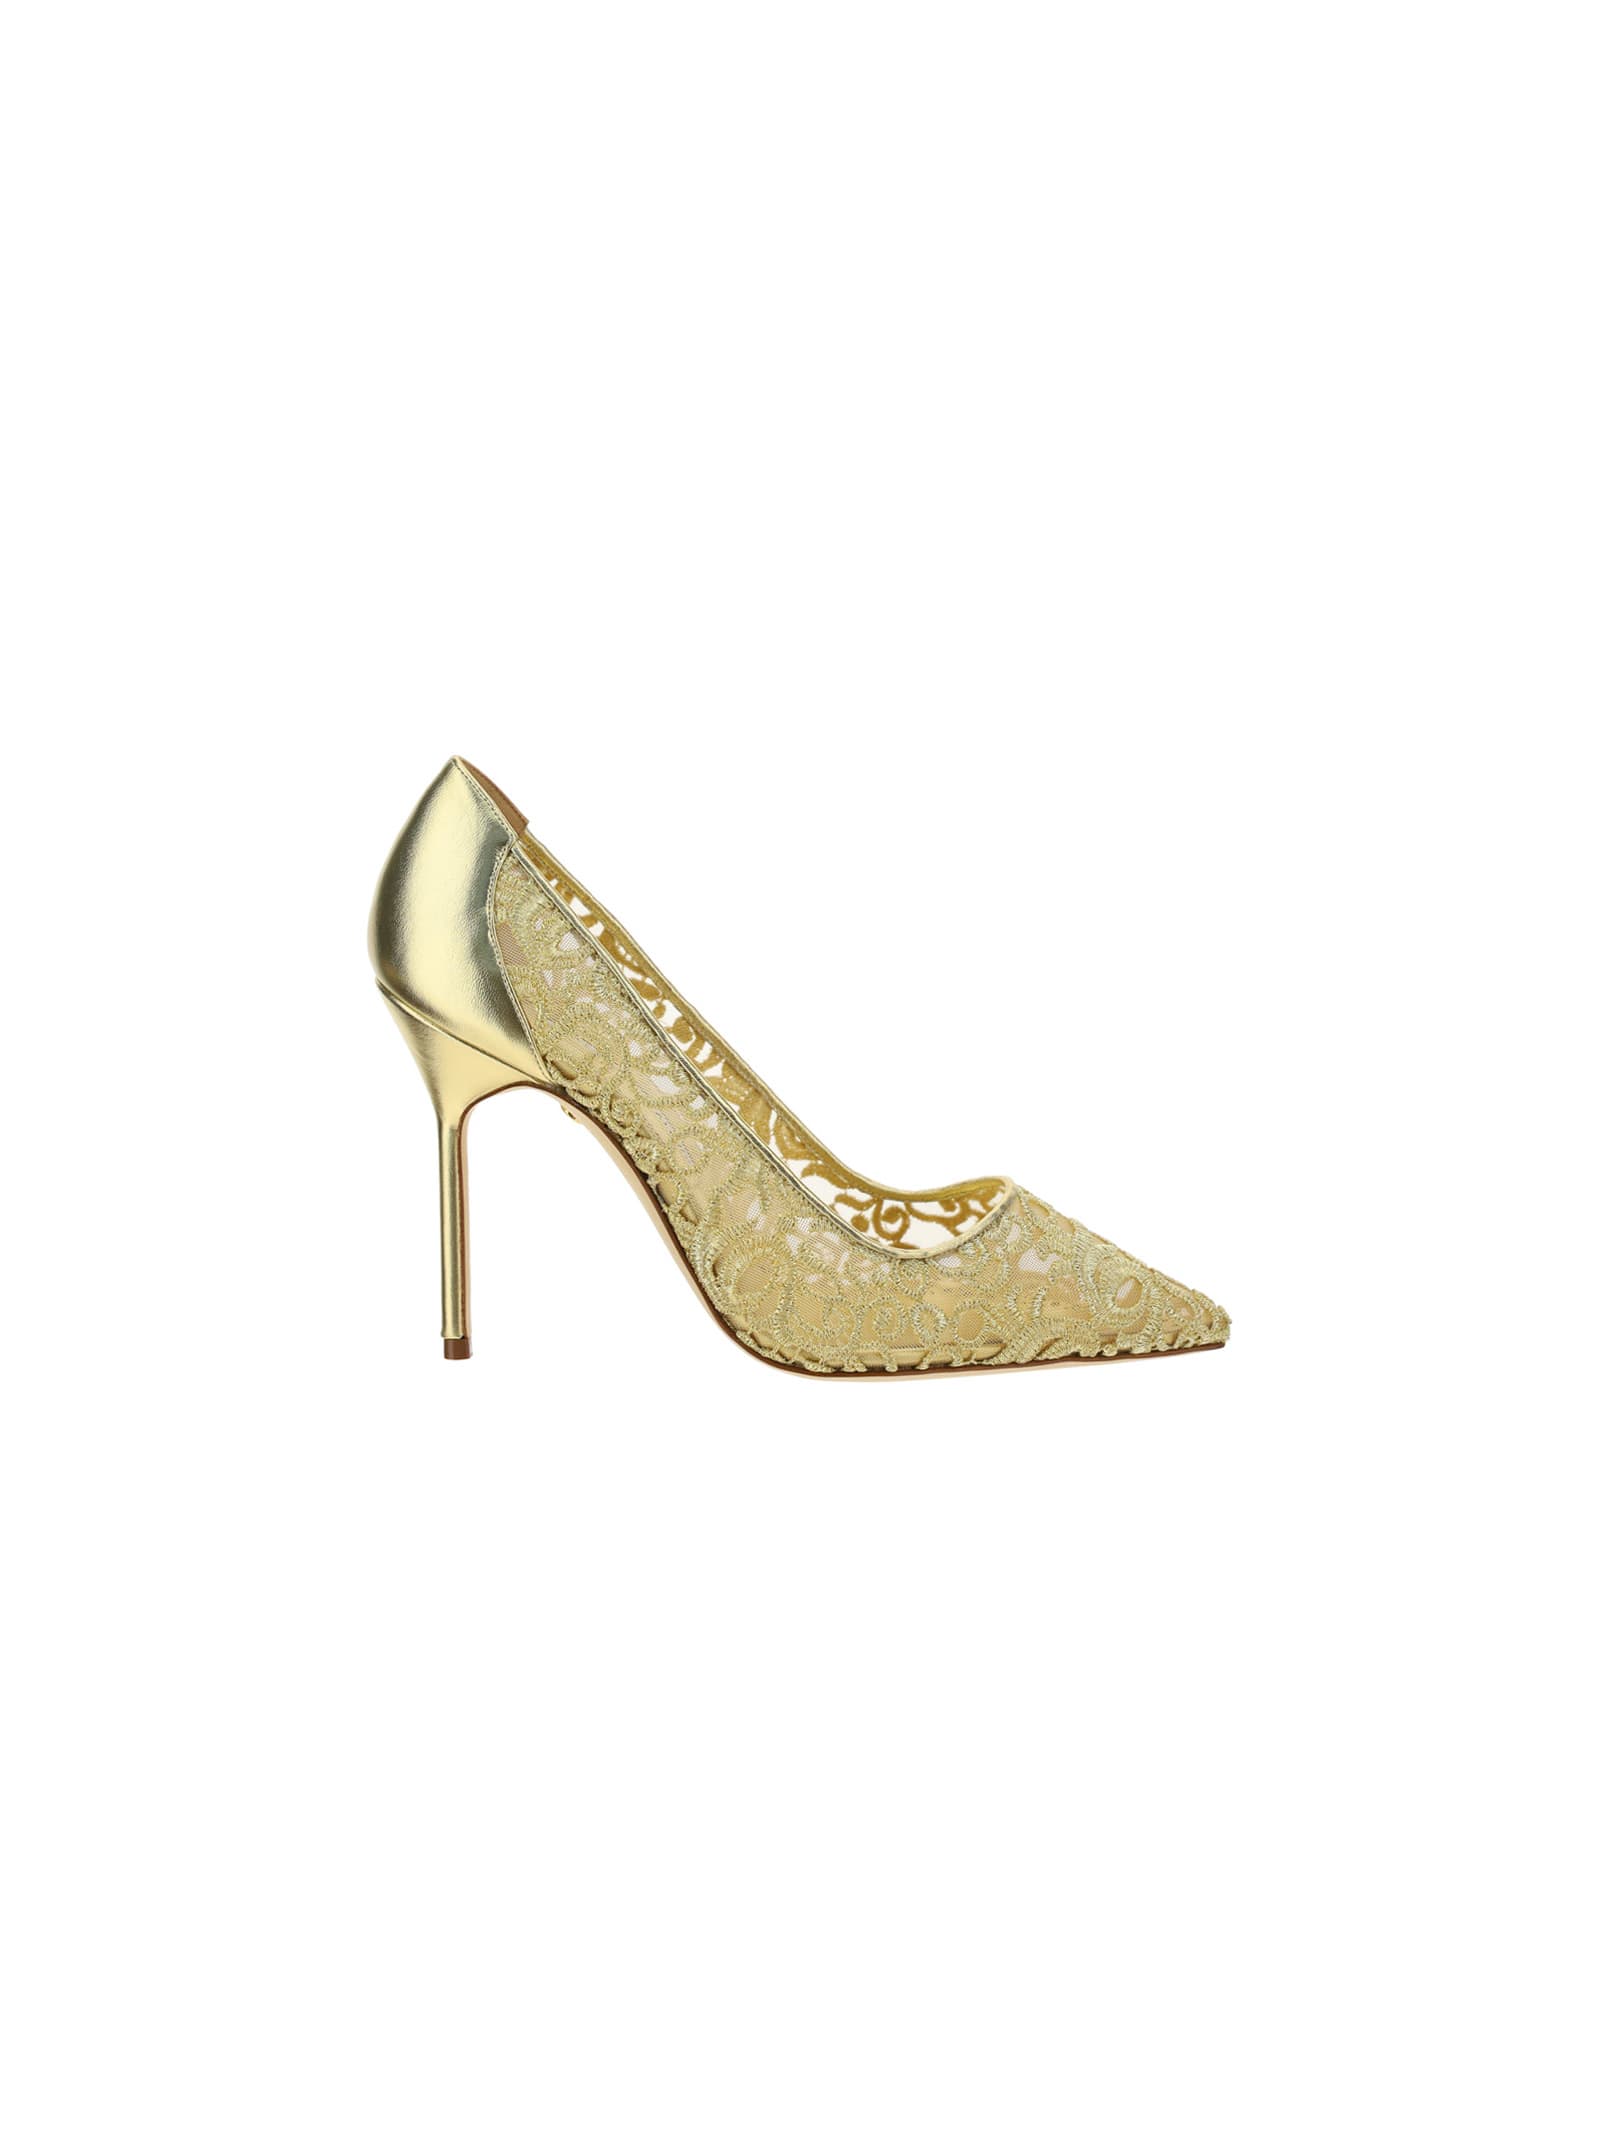 Manolo Blahnik Bbla Gold Lace 105 Shoes